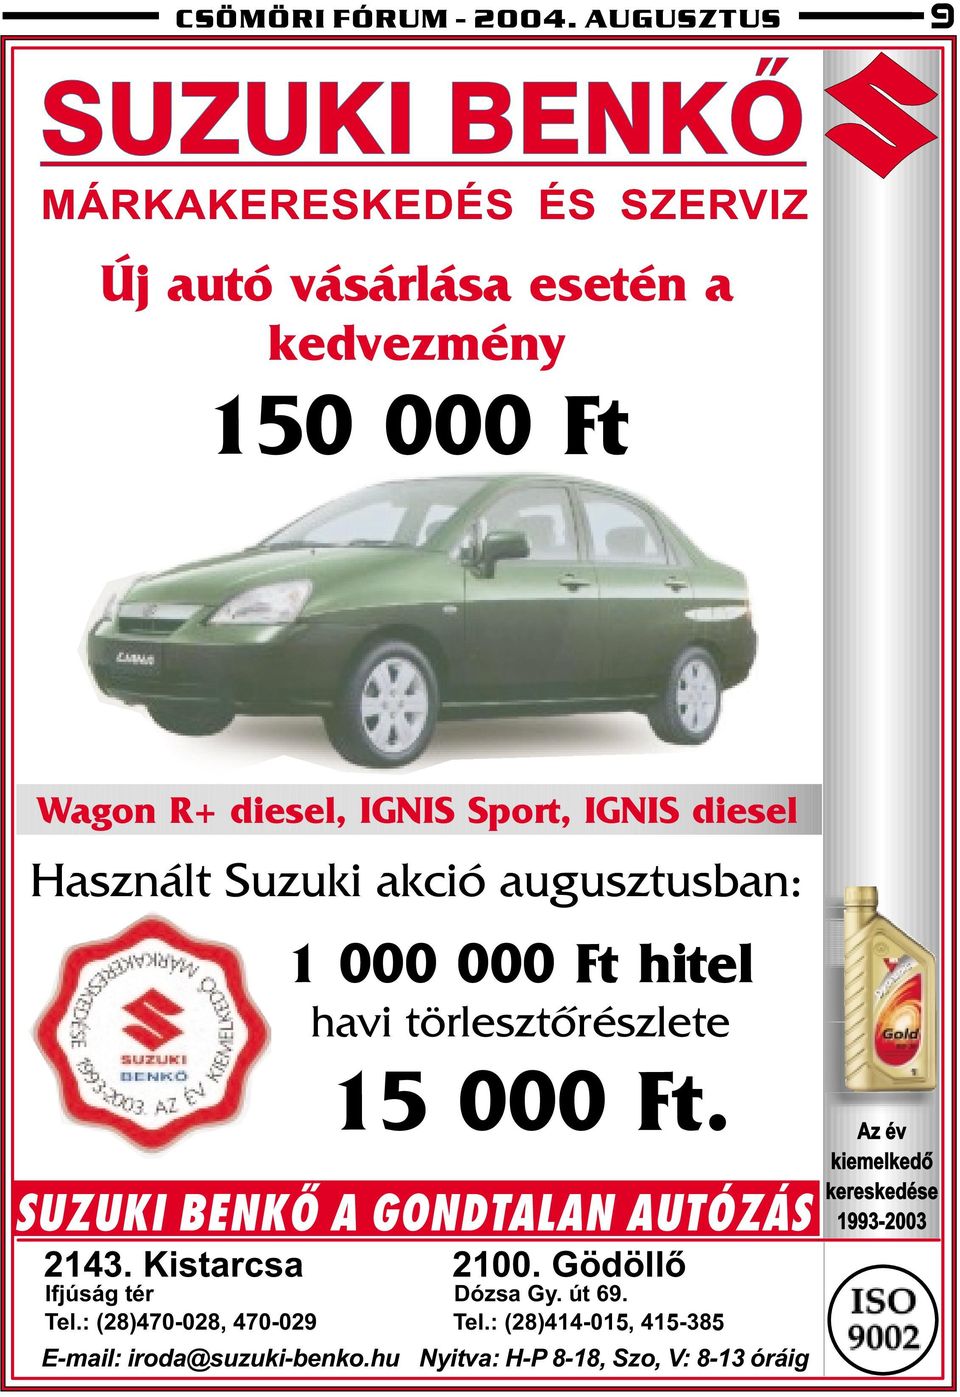 Sport, IGNIS diesel Használt Suzuki akció augusztusban: 1 000 000 Ft hitel havi törlesztõrészlete 15 000 Ft.